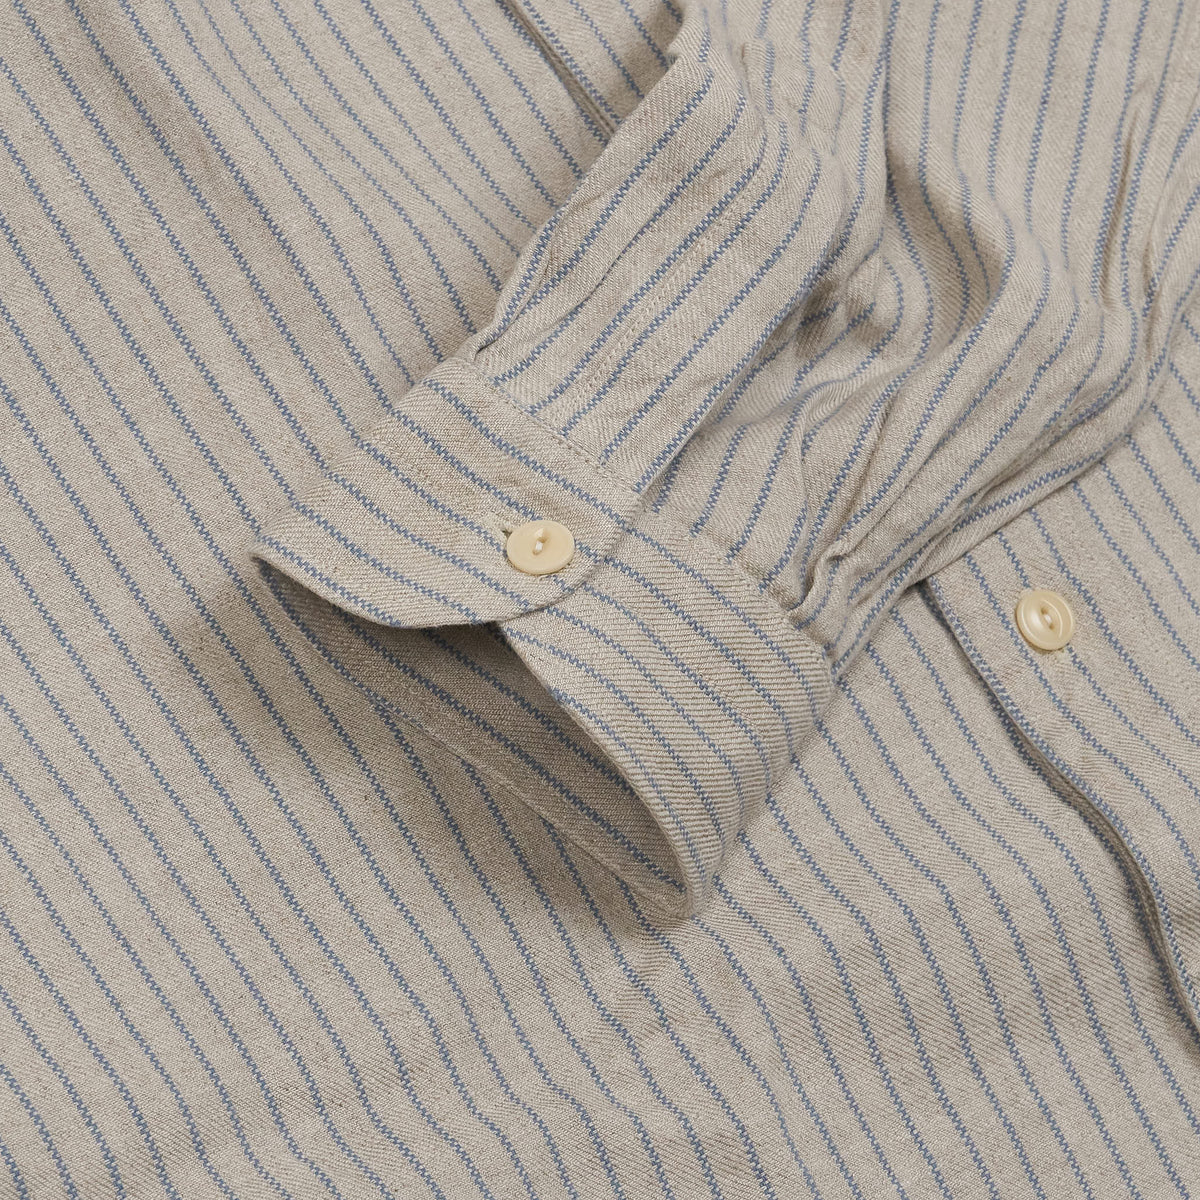 A.B.C.L. Long Sleeve Hemp/ Linen Long sleeve Shirt